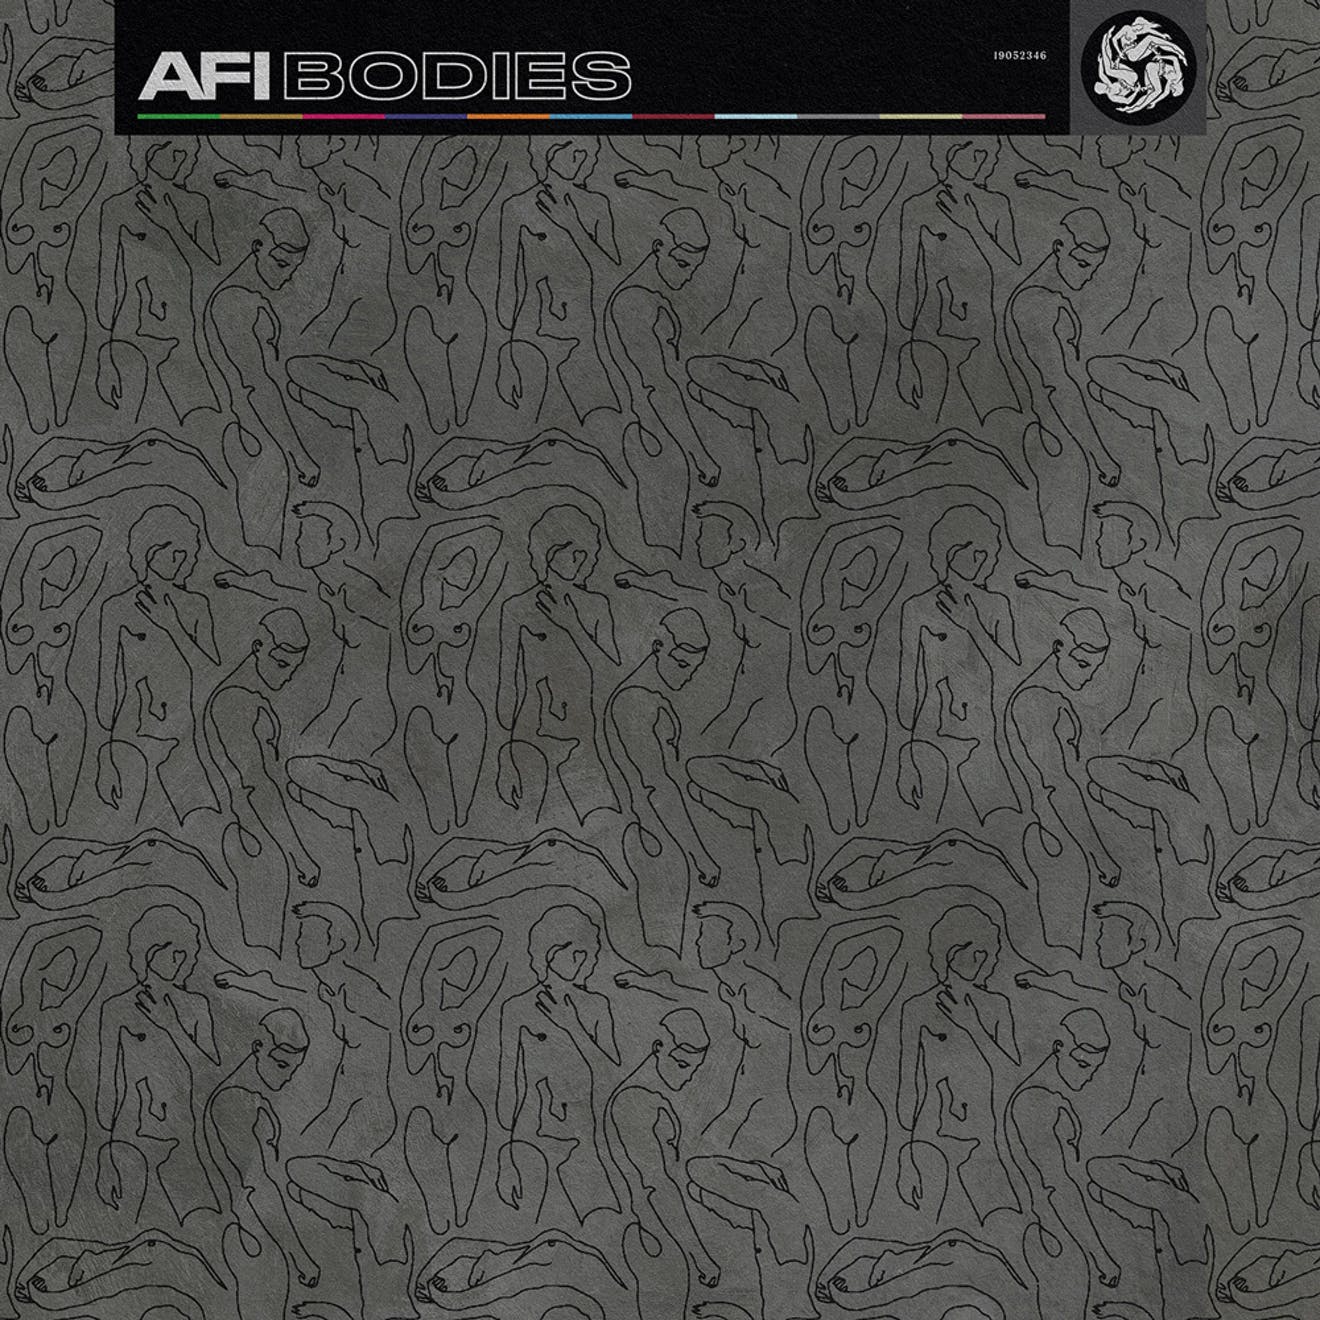 AFI Bodies album cover